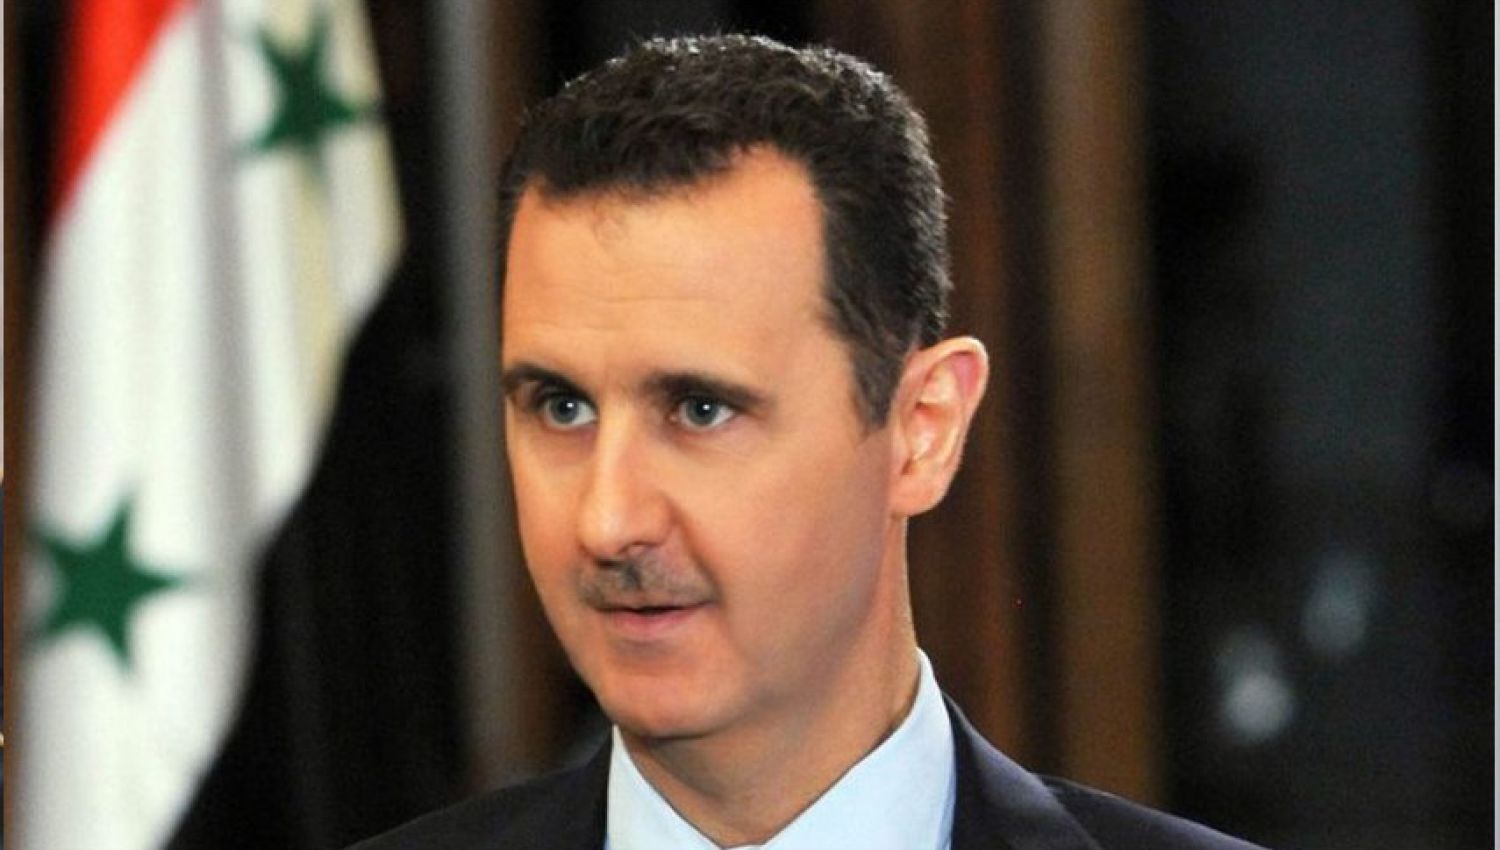 مرسوم العفو العام الرئاسي علامة فارقة في تاريخ سورية